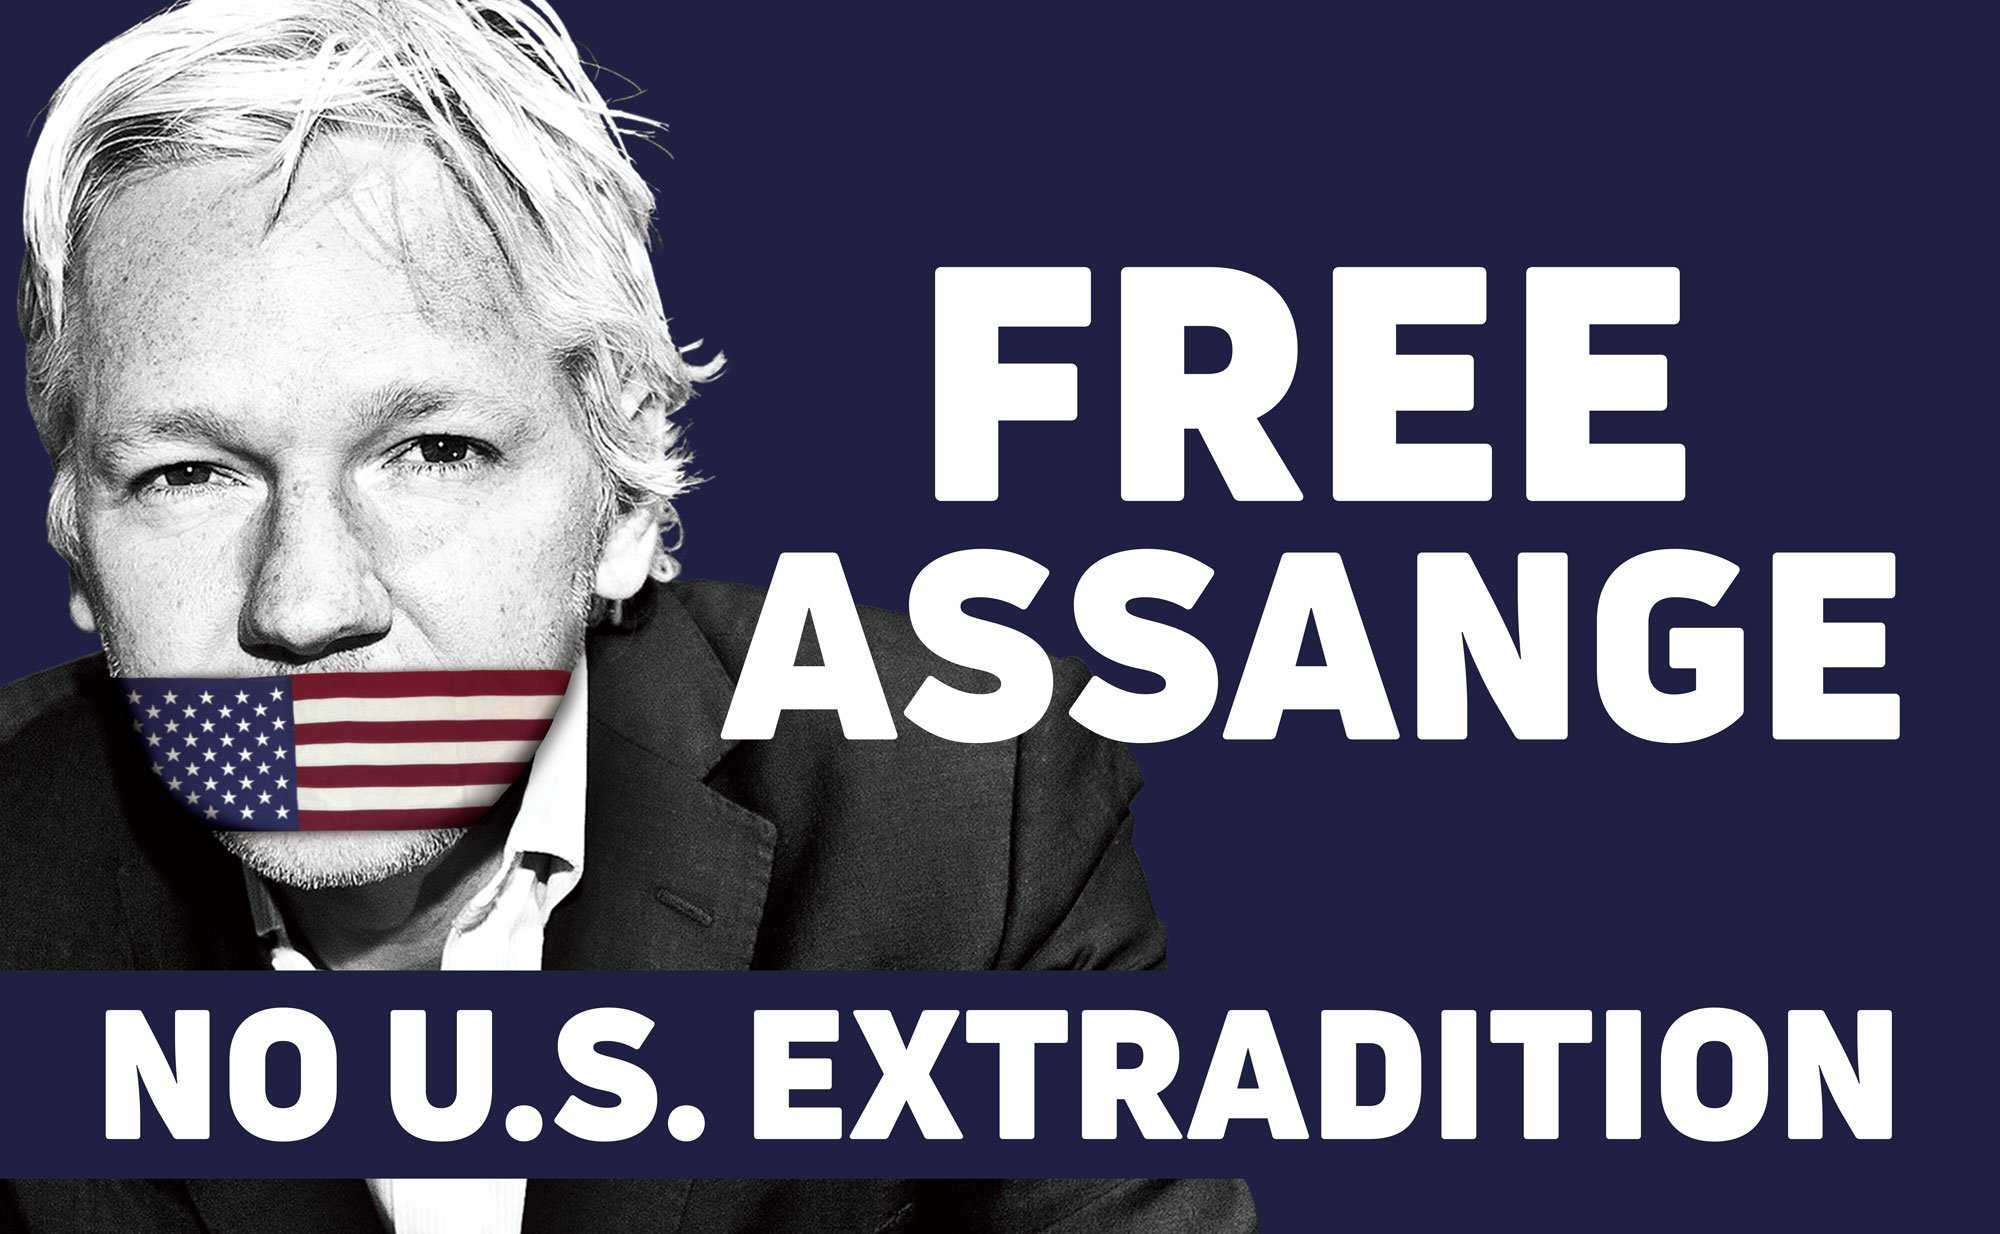 Создателя wikileaks джулиана ассанжа арестовали в лондоне. почему это произошло и в чём его обвиняют? разбираемся — регионы россии